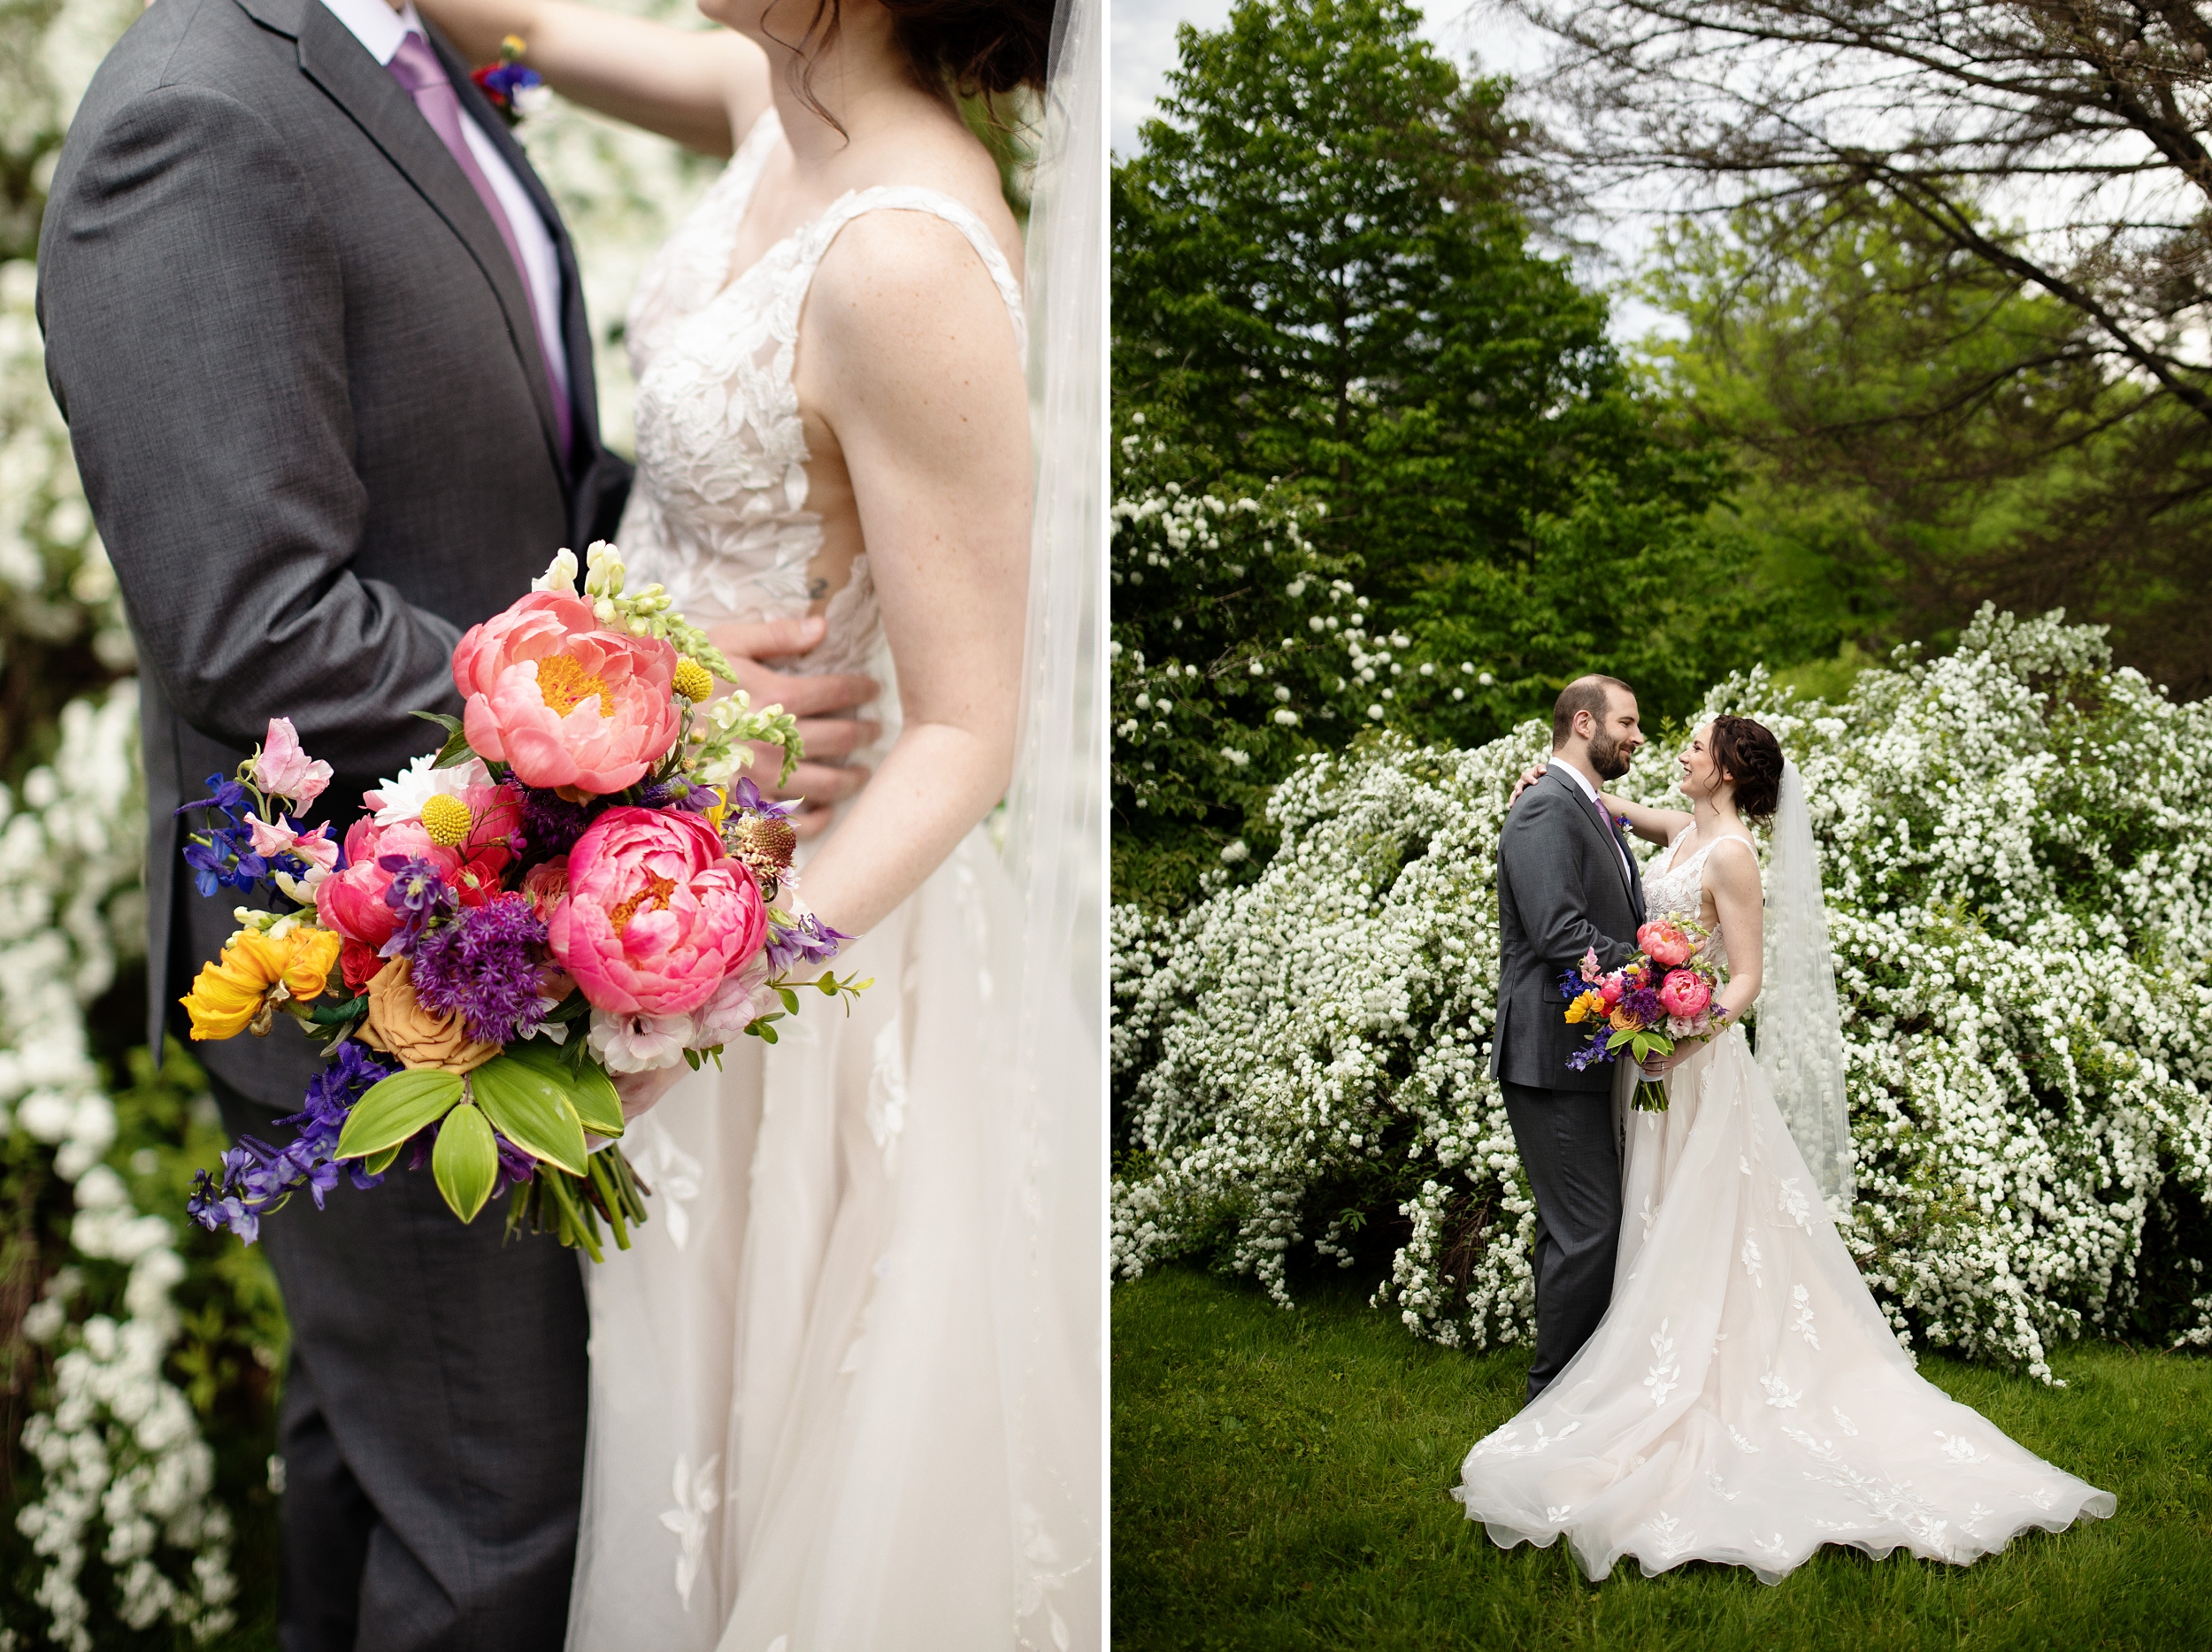 Tyler Arboretum Wedding, Philadelphia PA Wedding Photographer, Janae Rose Photography. Romantic Spring Wedding